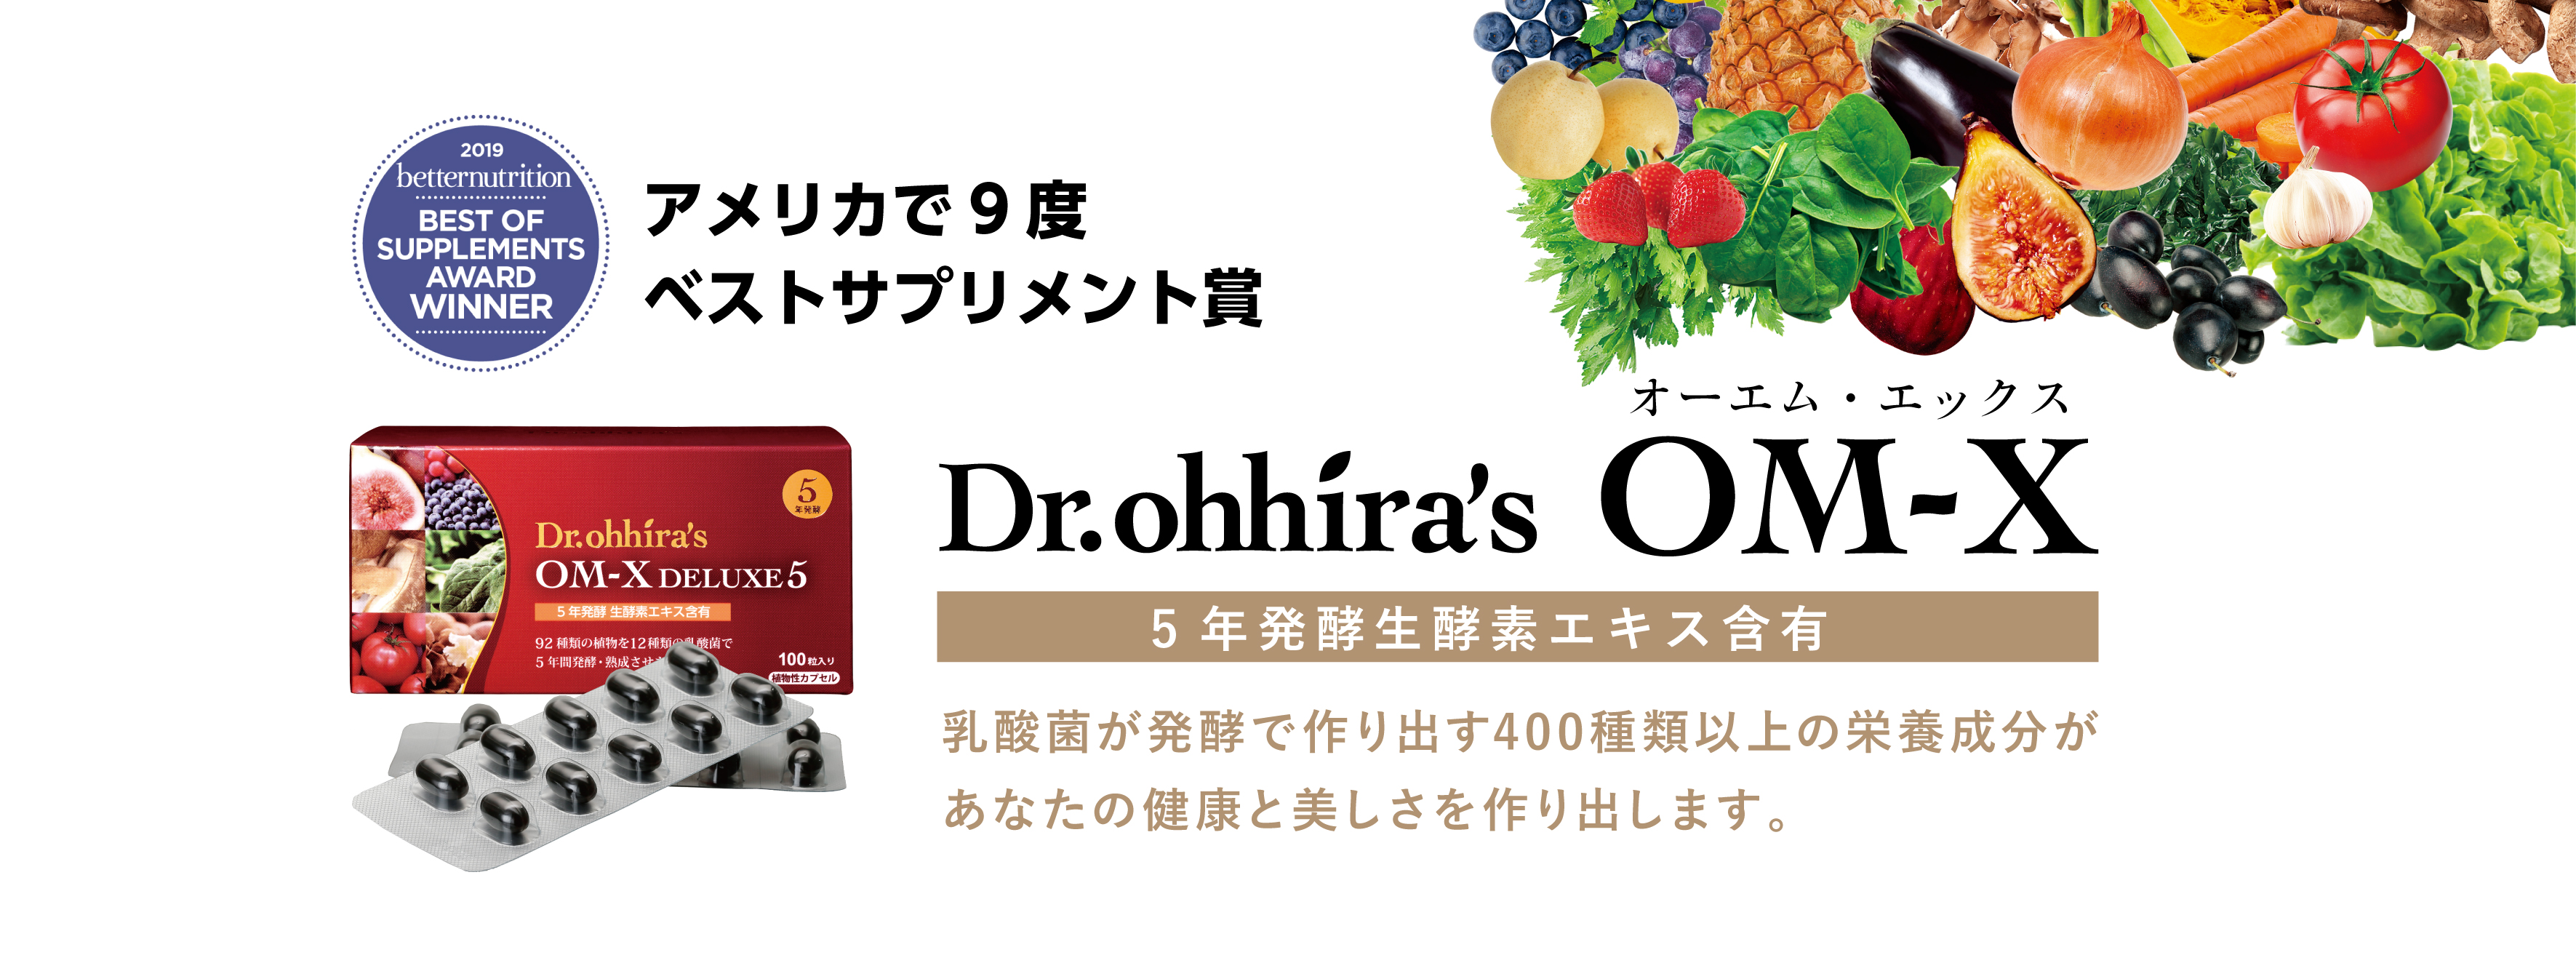 人気特価激安 生酵素食品 OM-X Premium 三浦りさ子さんが愛用中の生酵素サプリメント 5年発酵 92種類の原材料 